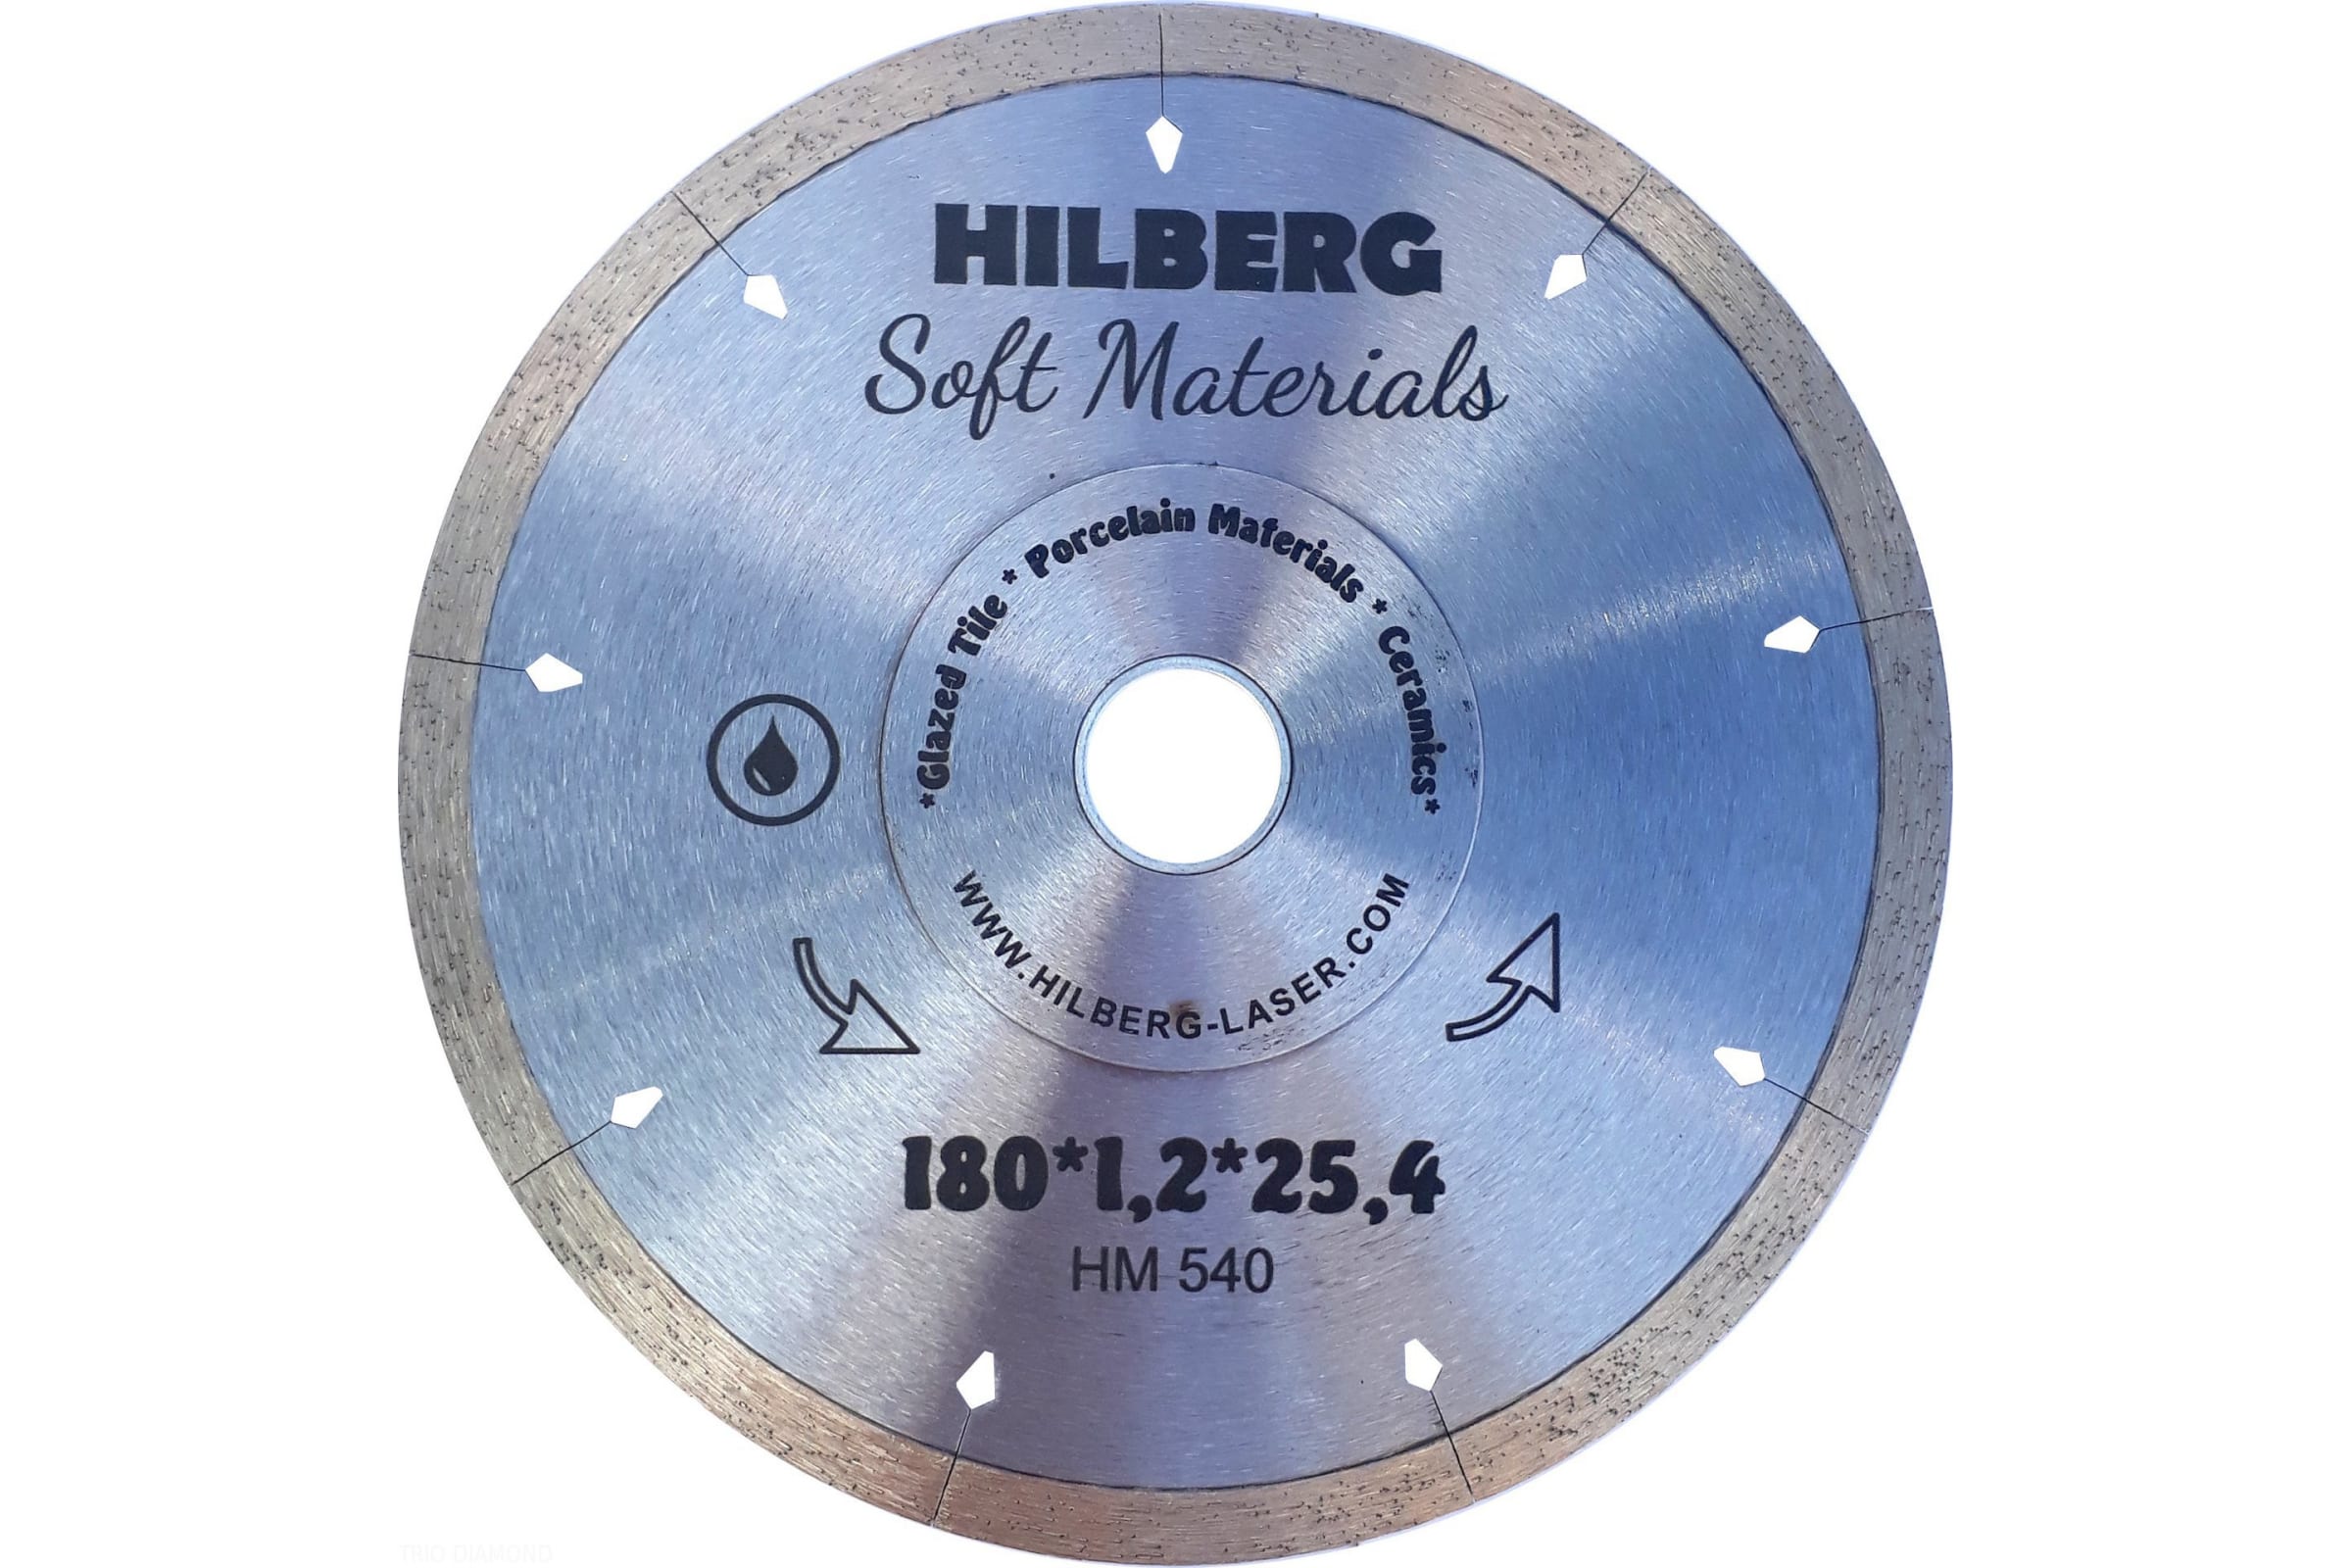 фото Hilberg диск алмазный отрезной 180x25,4hyper thin 1,2 mm hm540